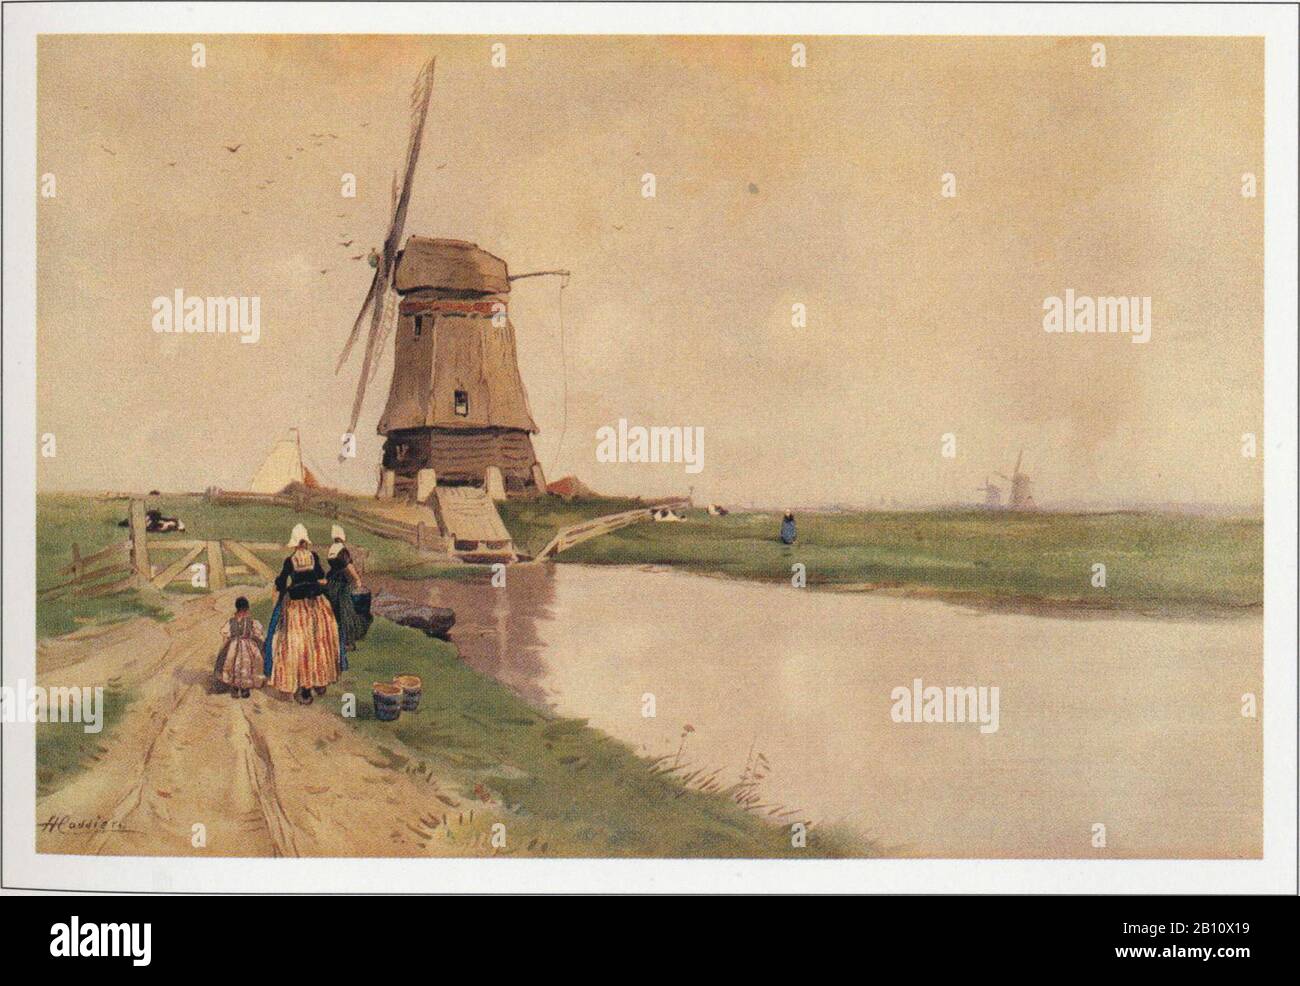 Volendam molen a - Ilustración de Henri cassers (1858 - 1944) Foto de stock